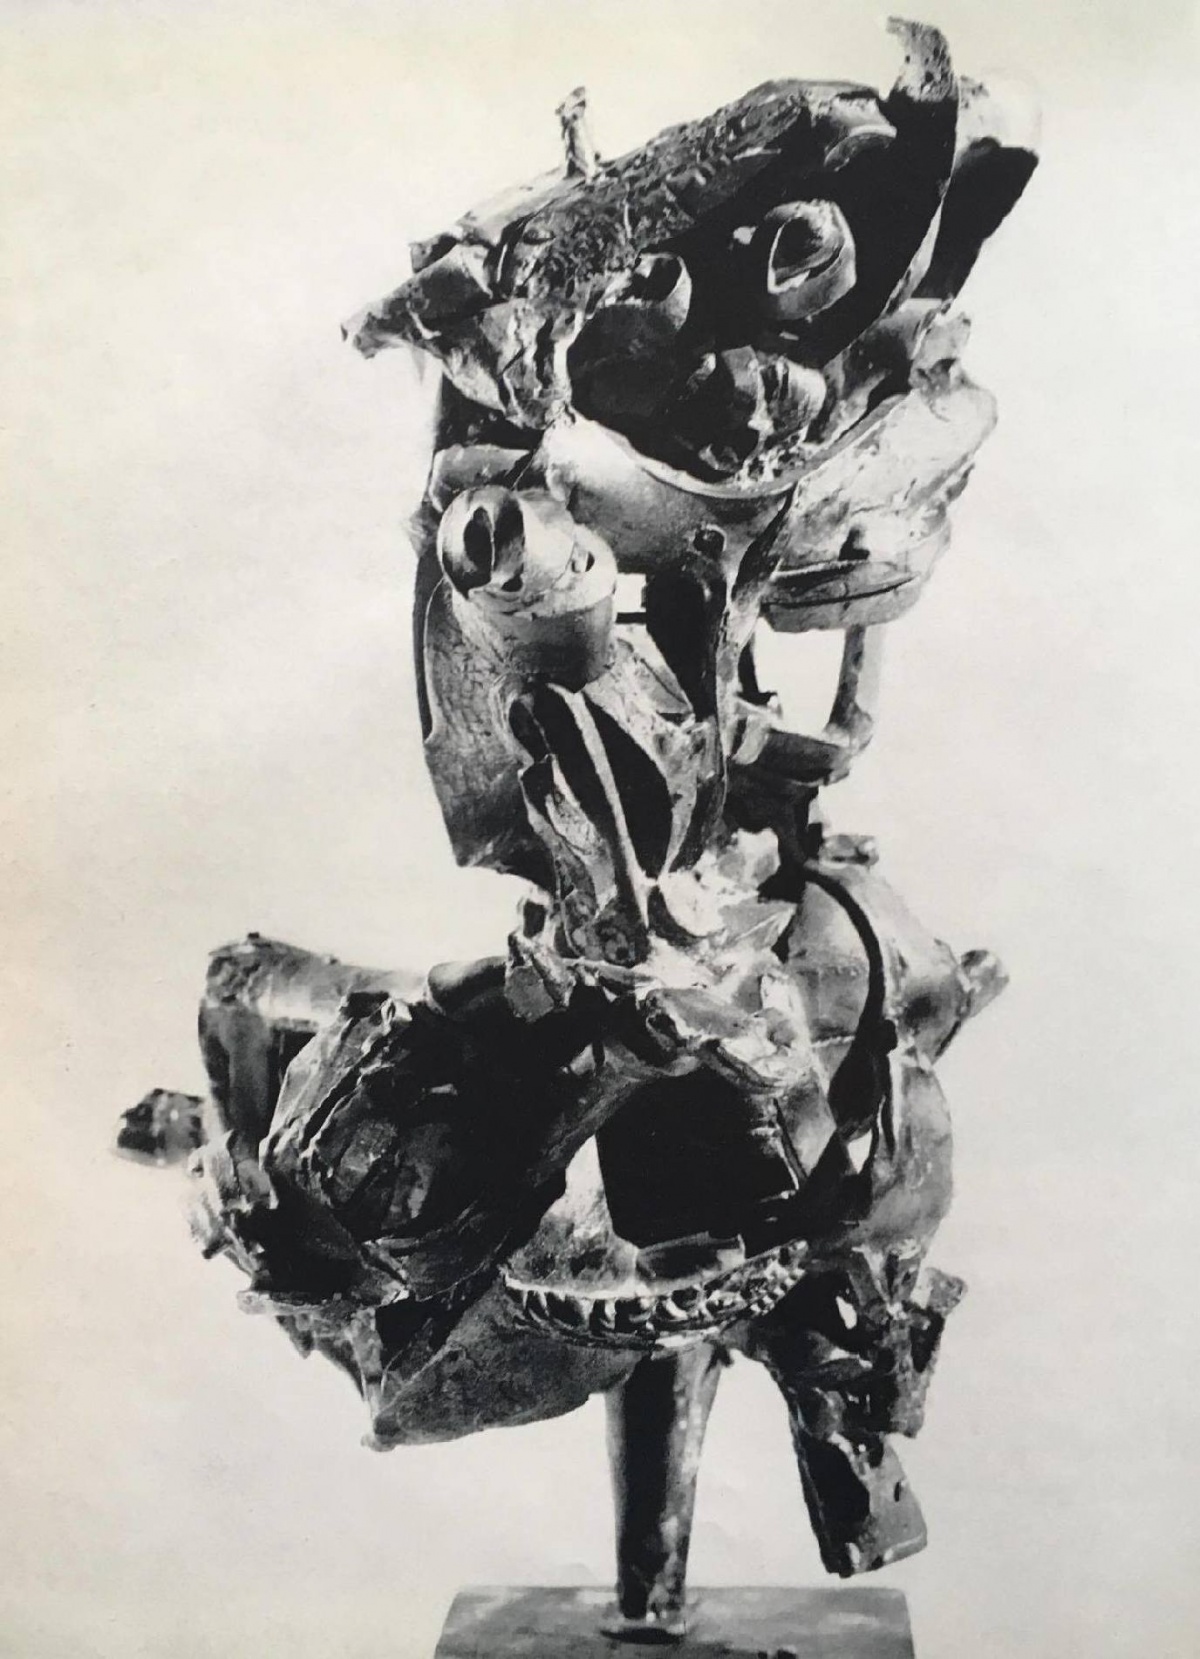 ein glänzendes alleinsein, movens, Bild: Publikation movens. Dokumente und Analysen zur Dichtung, bildenden Kunst, Musik, Architektur, 1960.